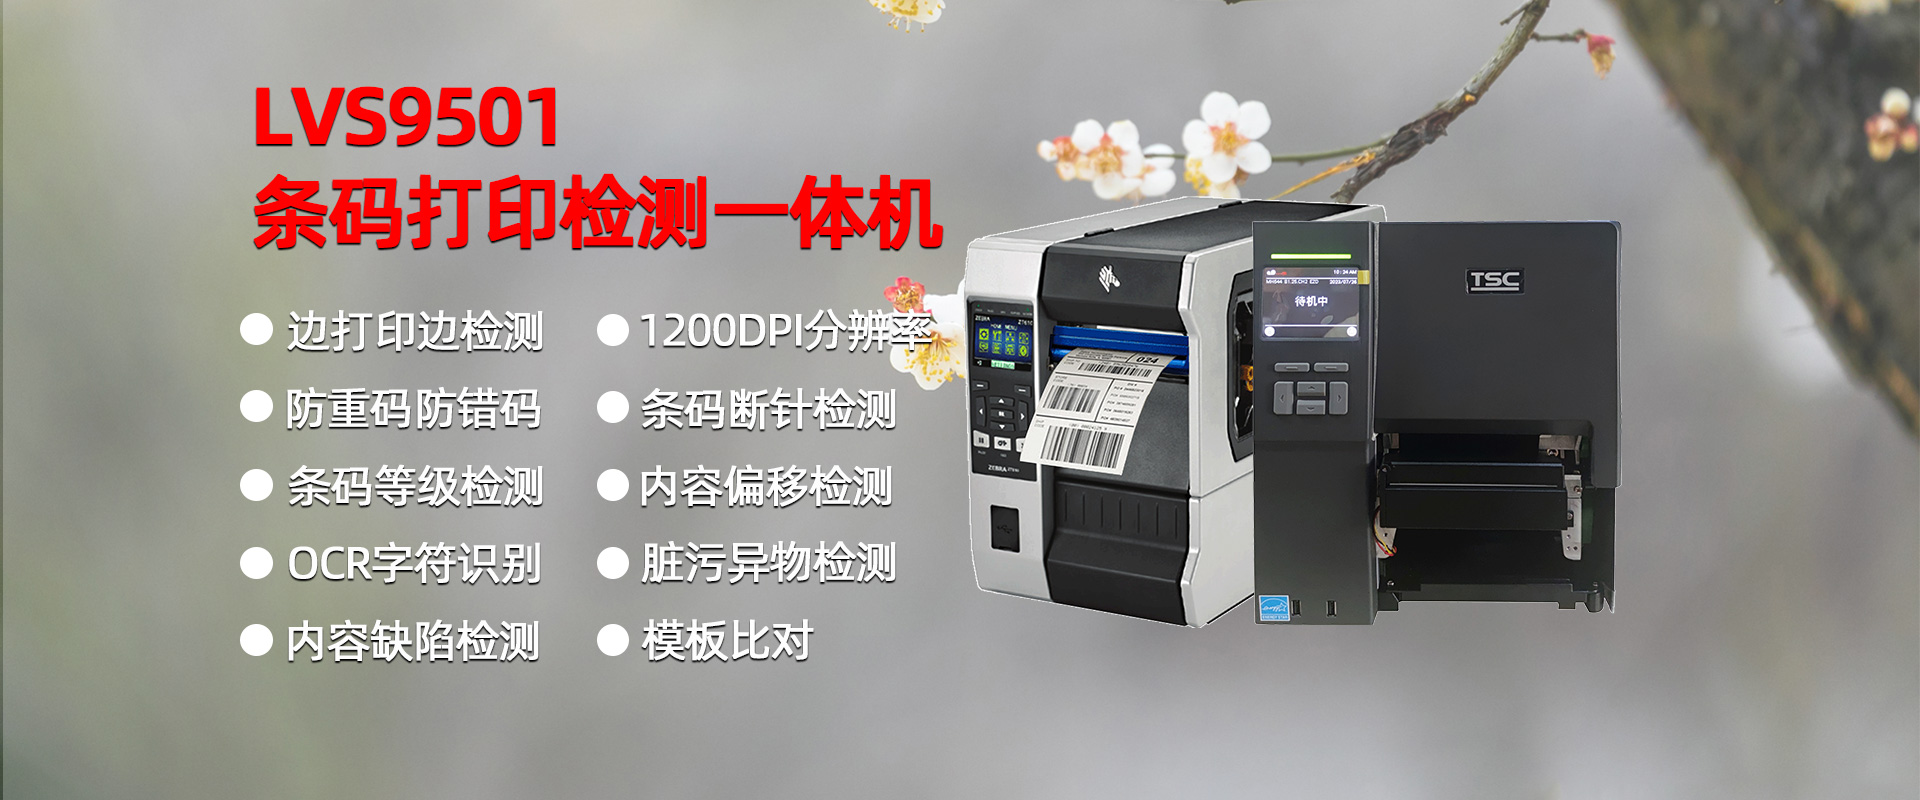 LVS9501条码标签打印检测一体机